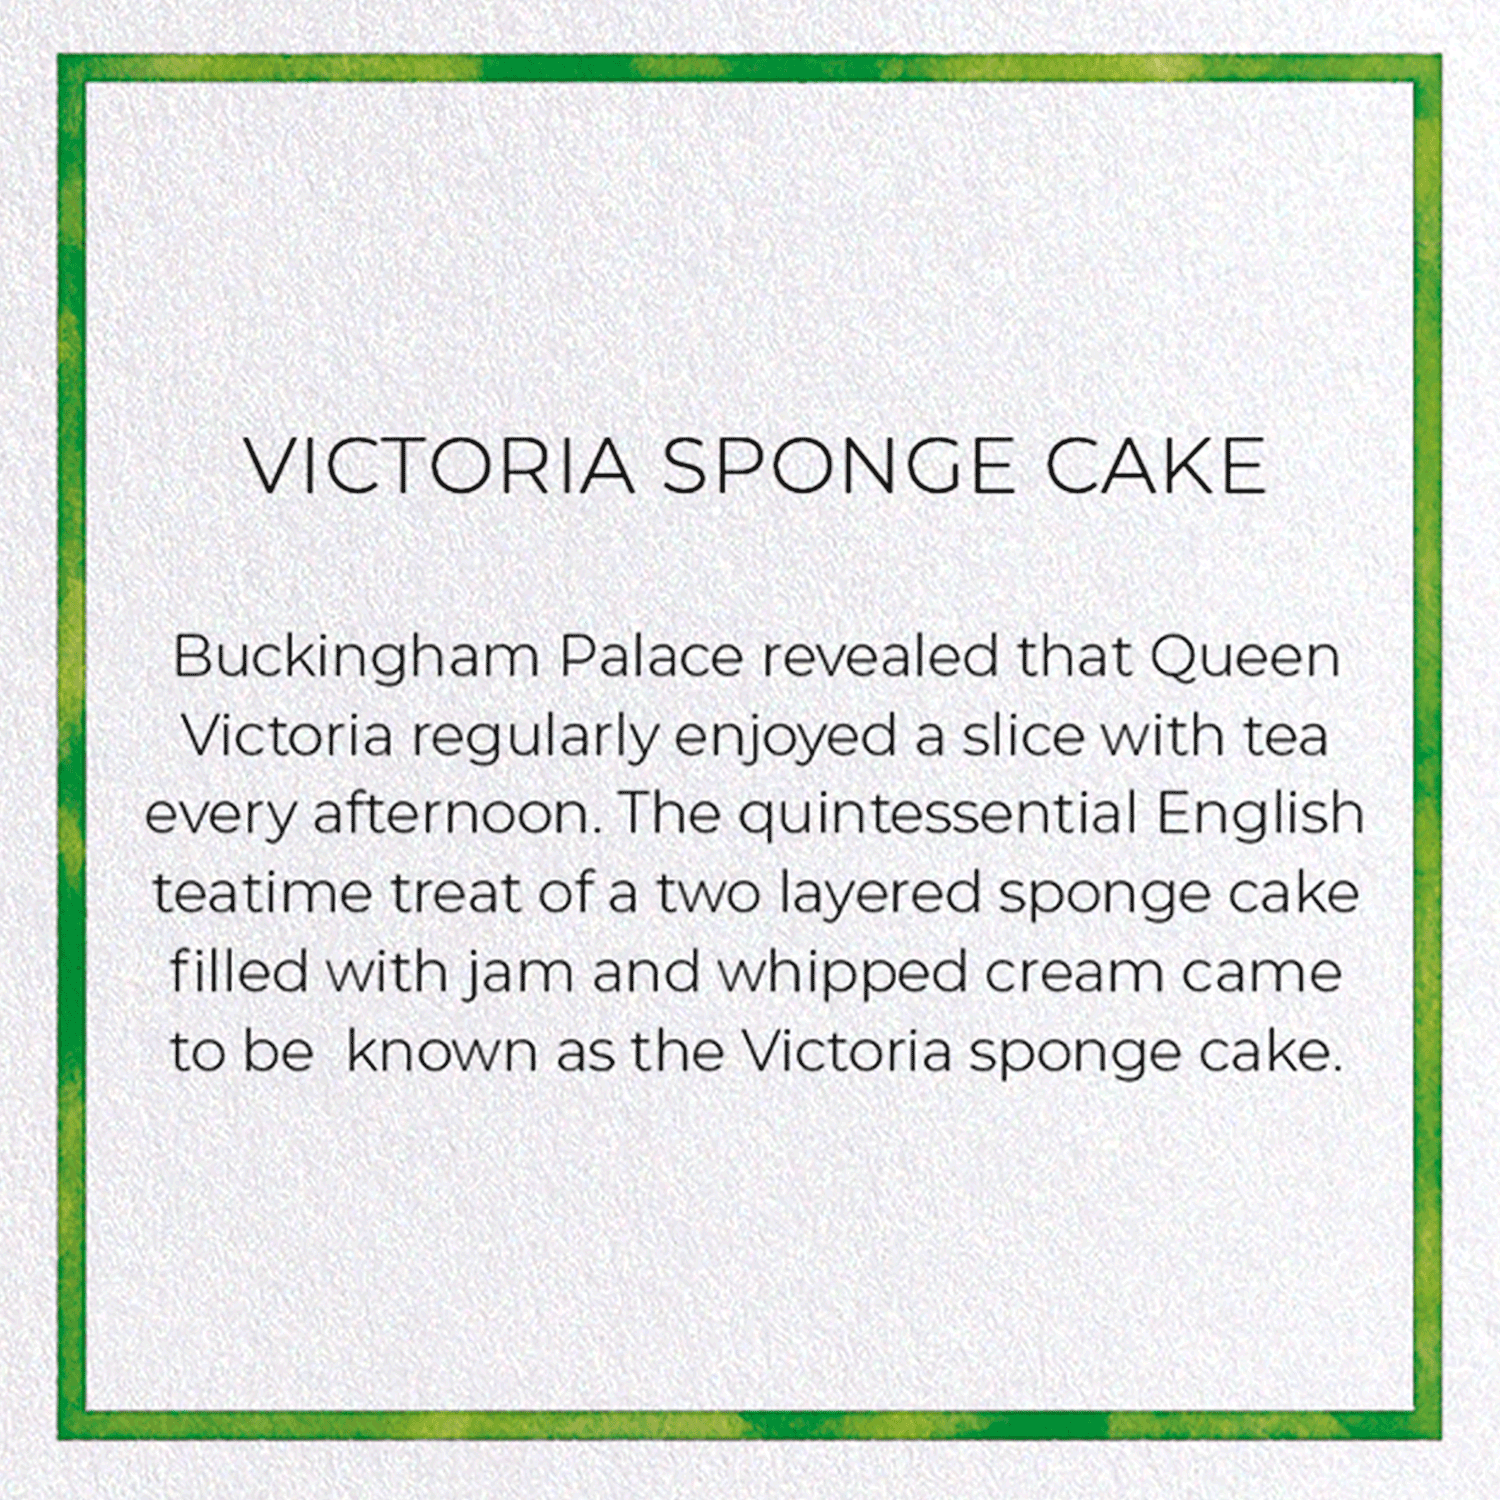 VICTORIA SPONGE CAKE